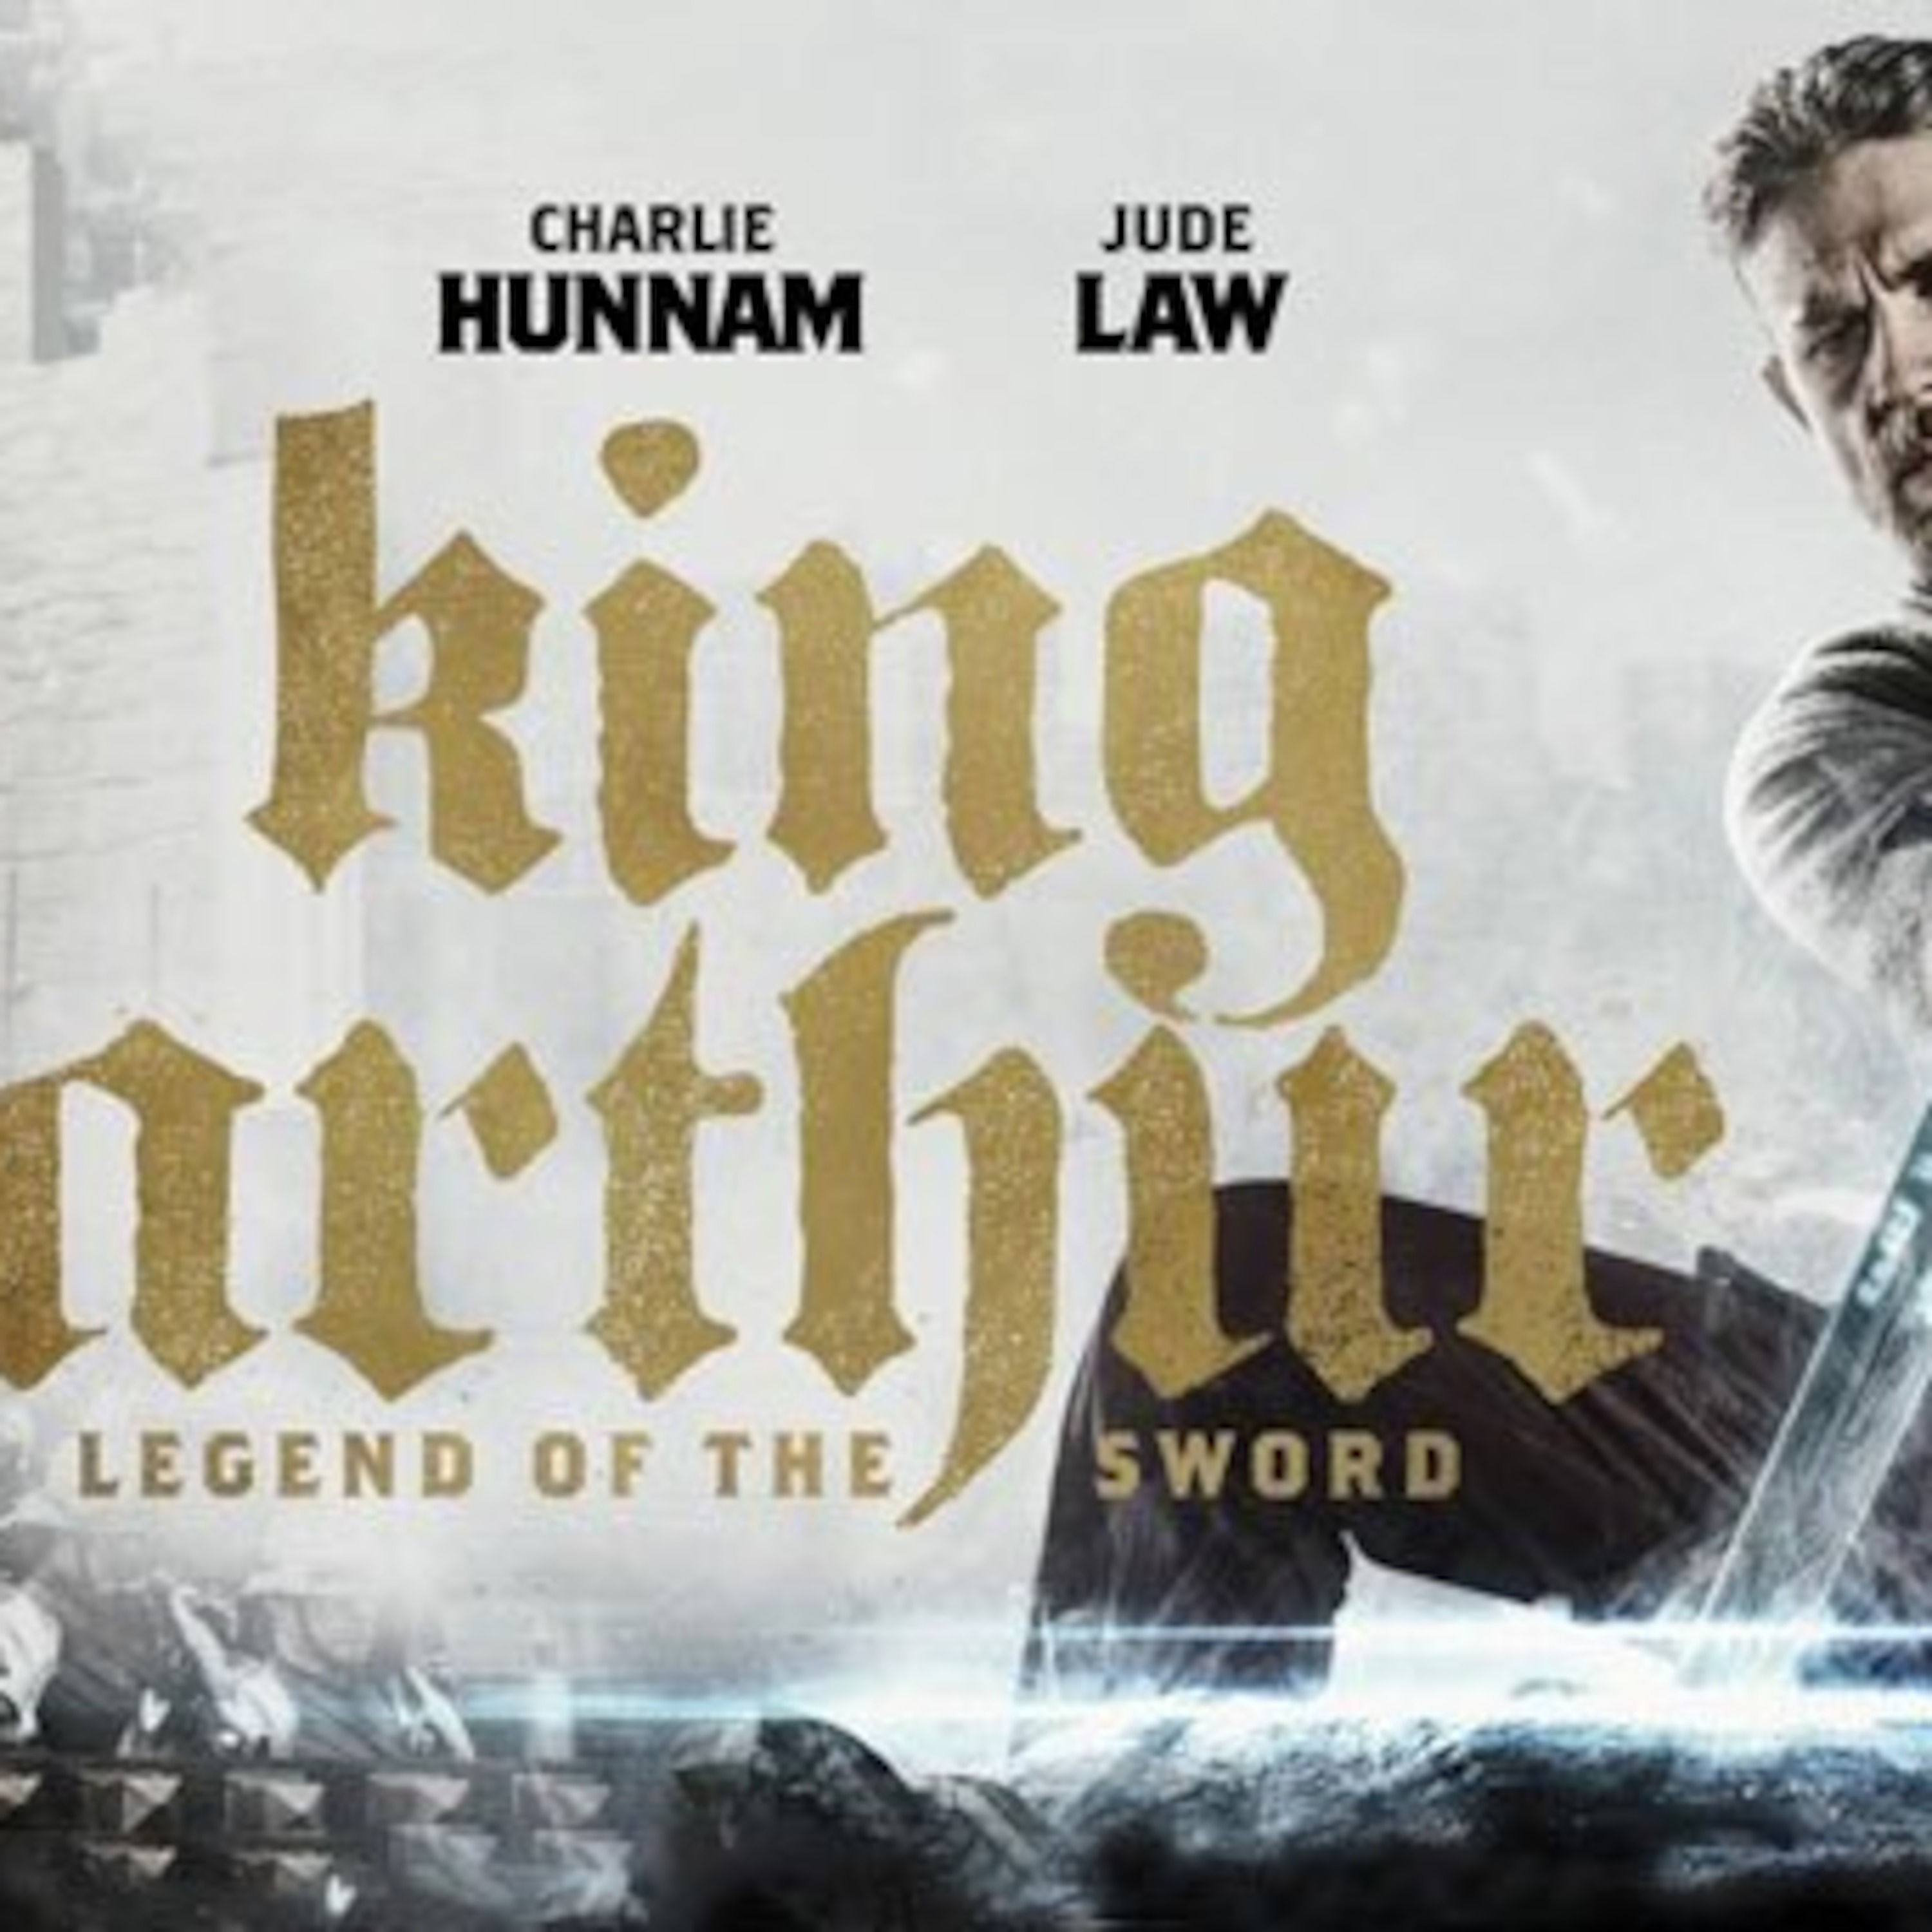 King arthur legend of the sword full movie